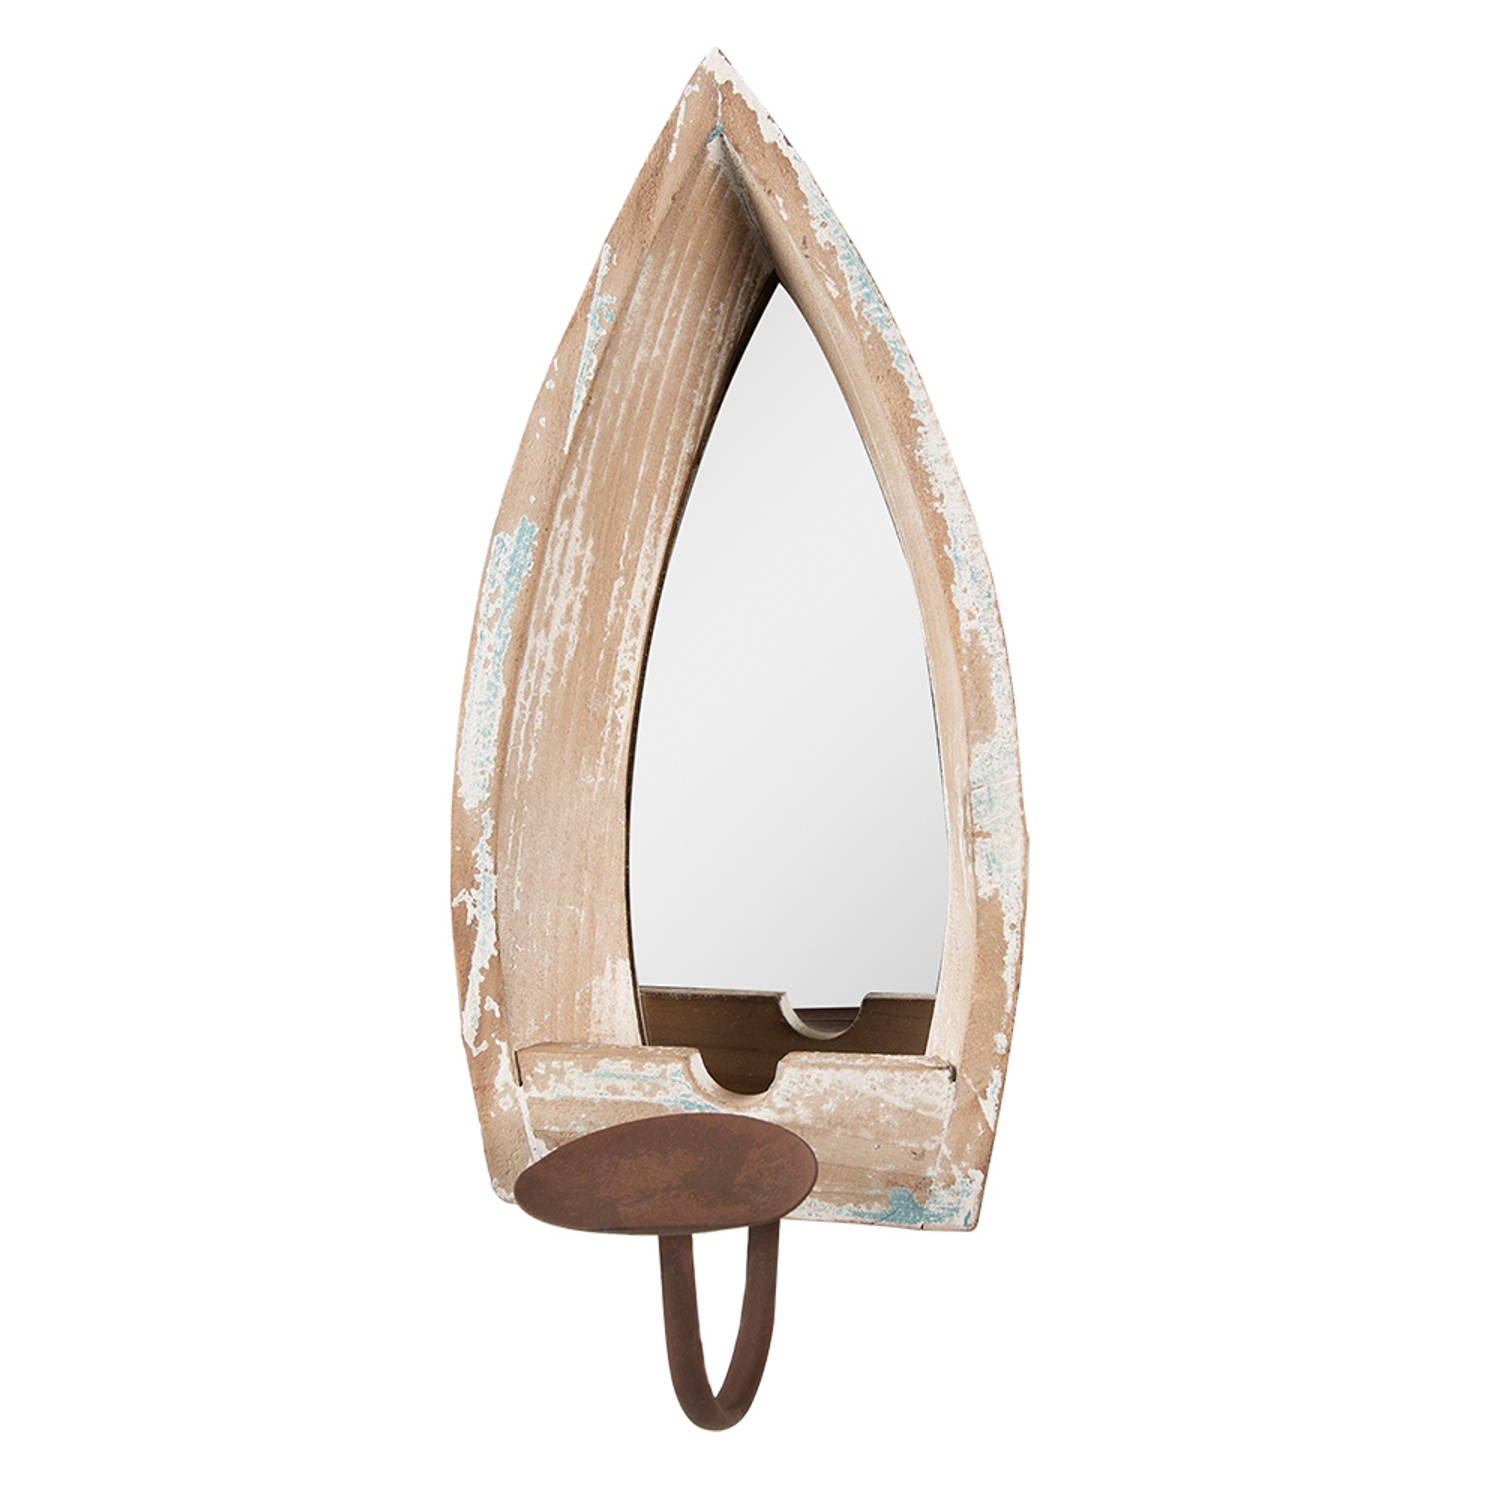 HAES DECO - Decoratieve Spiegel met Kandelaar - Kleur Beige - Formaat 15x17x36 cm - Materiaal Hout / Glas - Wandspiegel